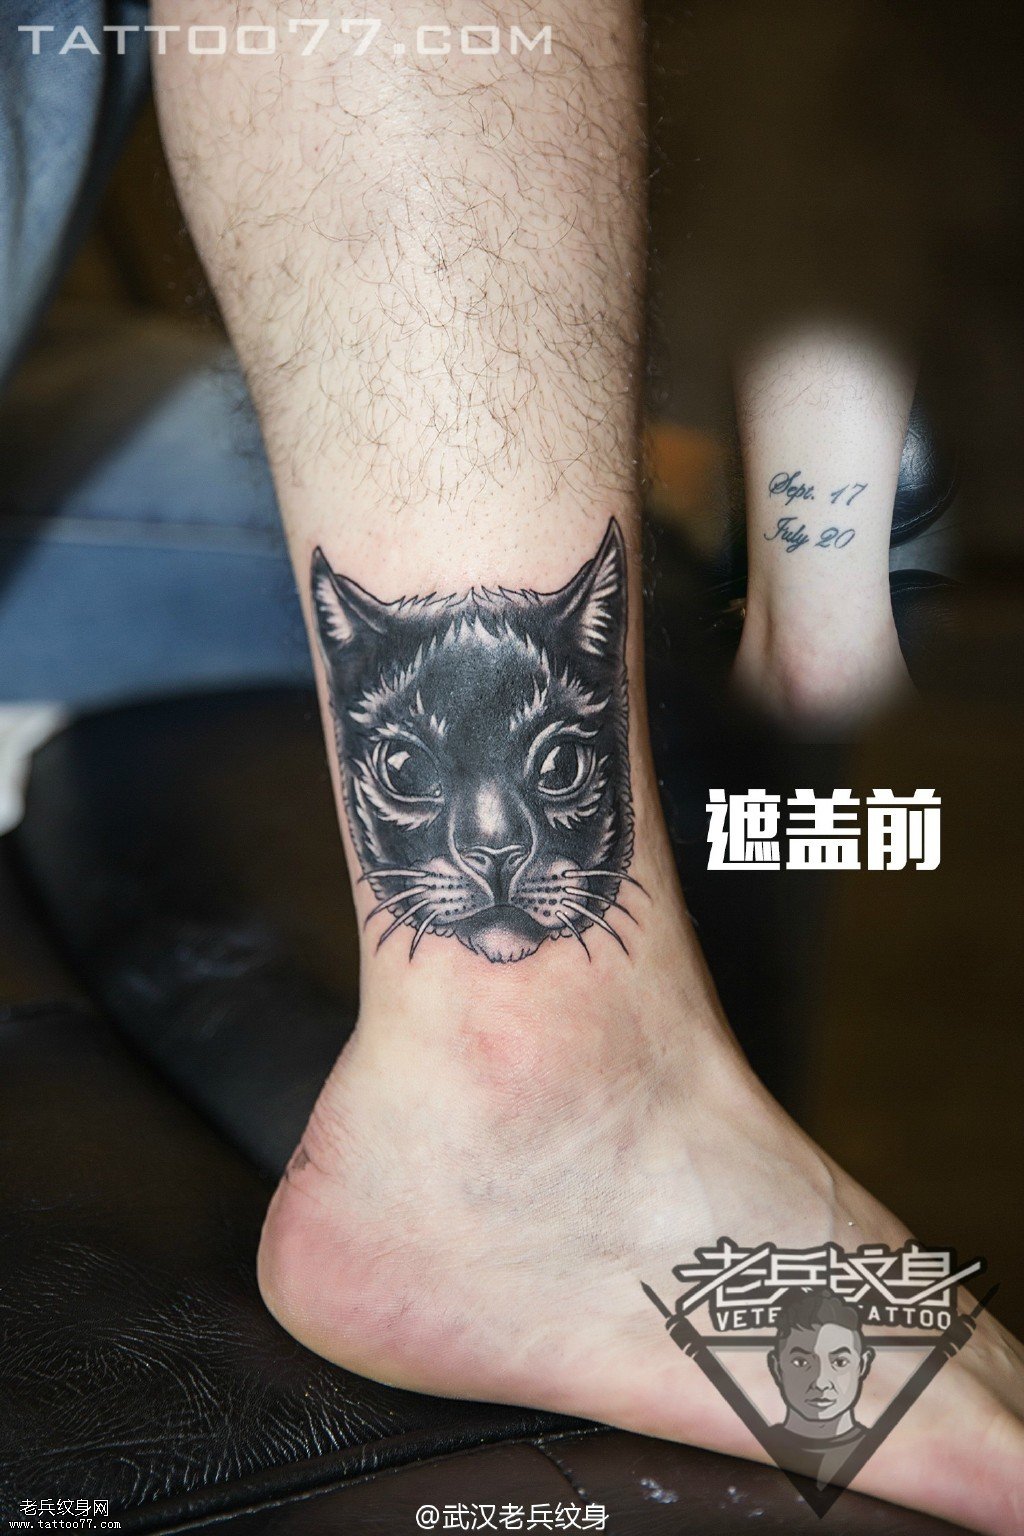 脚踝猫咪纹身图案作品遮盖旧纹身